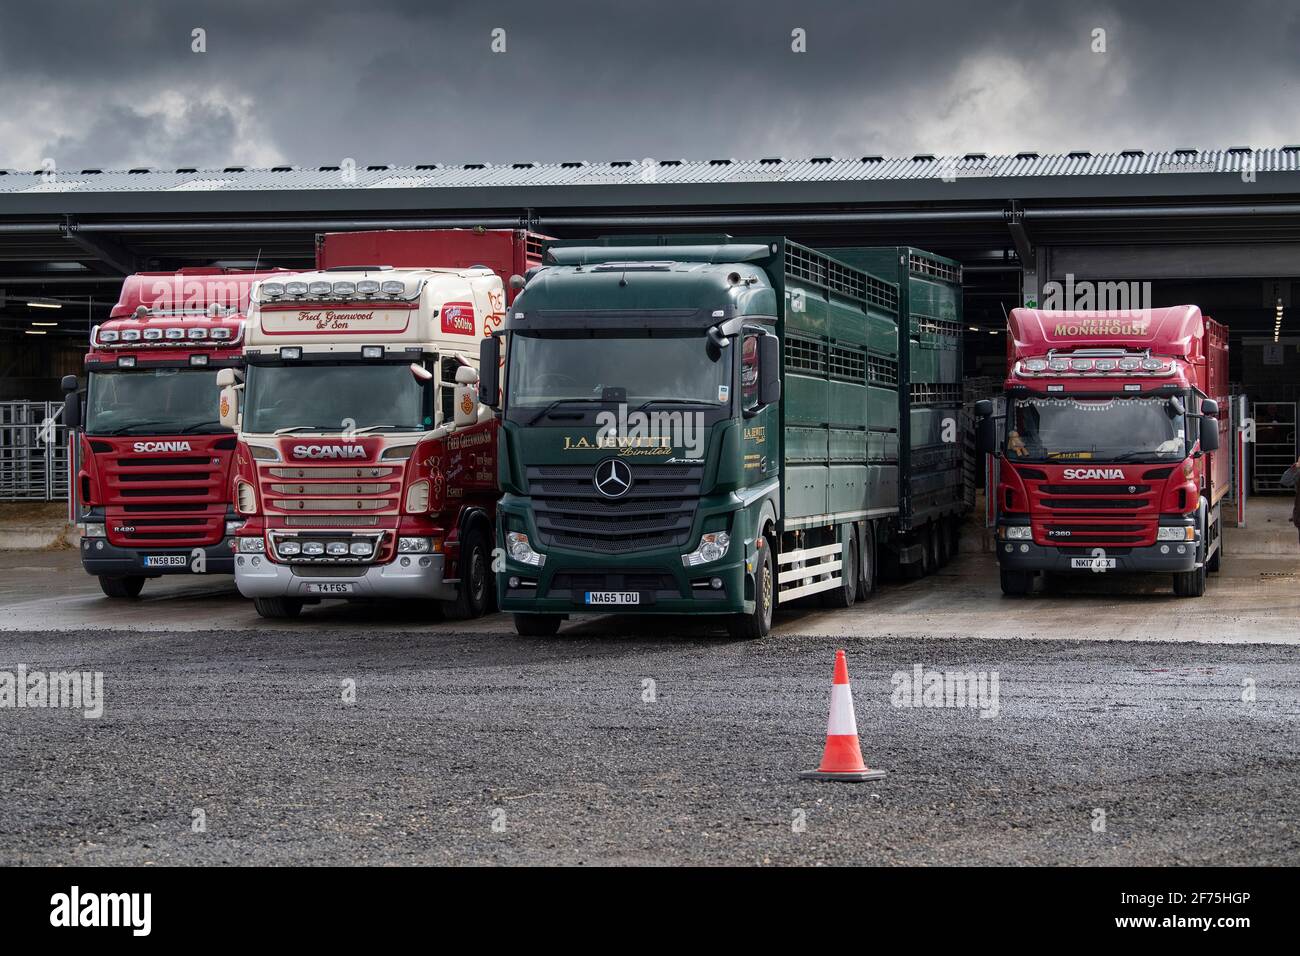 Vagones de transporte de ganado estacionados en un mercado de subastas, Darlington, Reino Unido Foto de stock